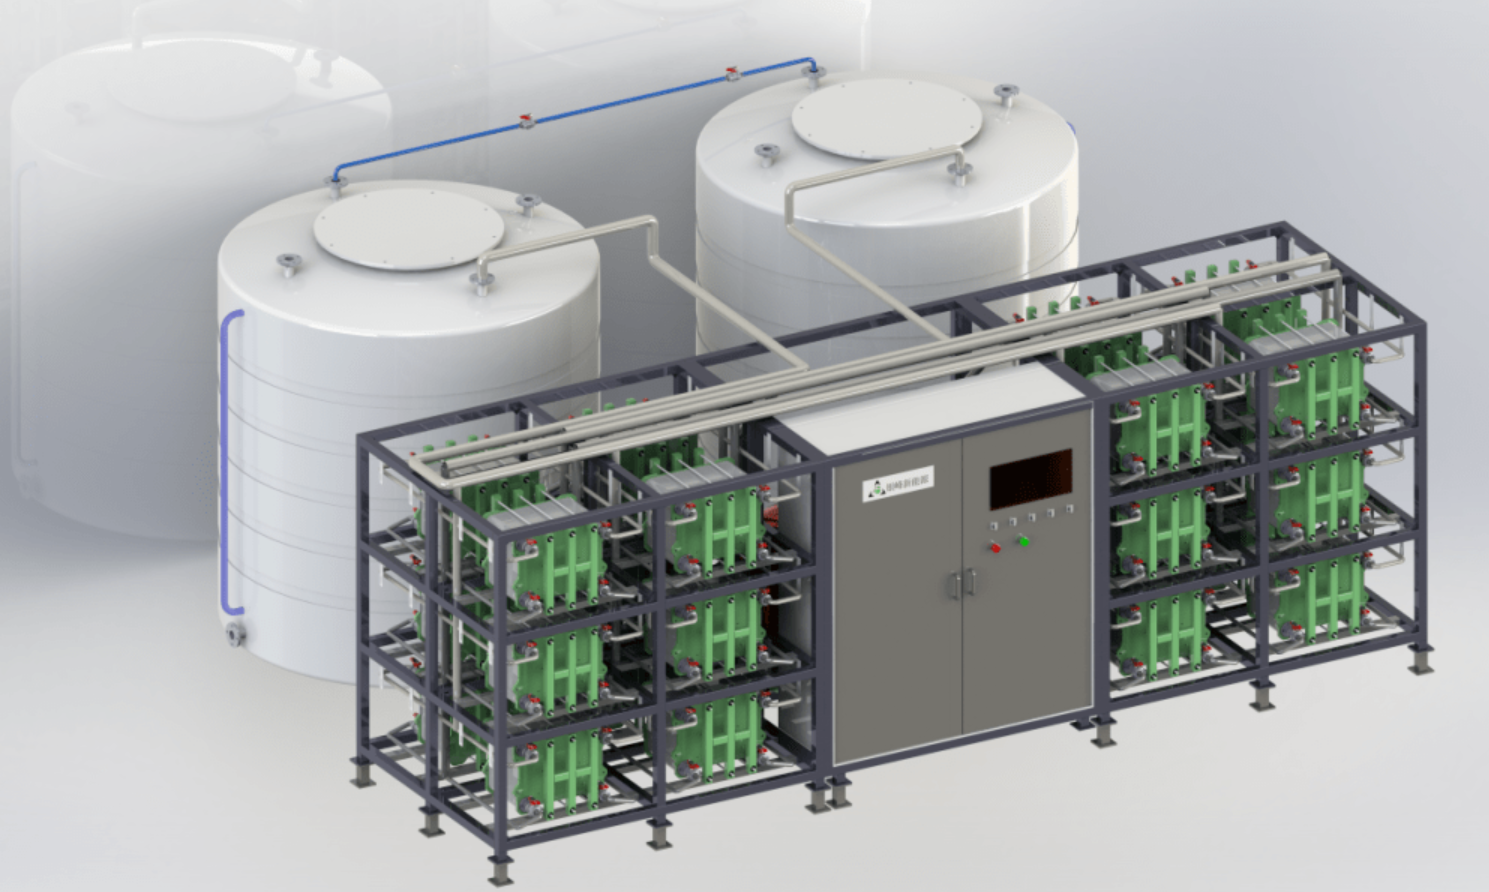 PEM电解水/全钒电池电堆组装伺服压力机